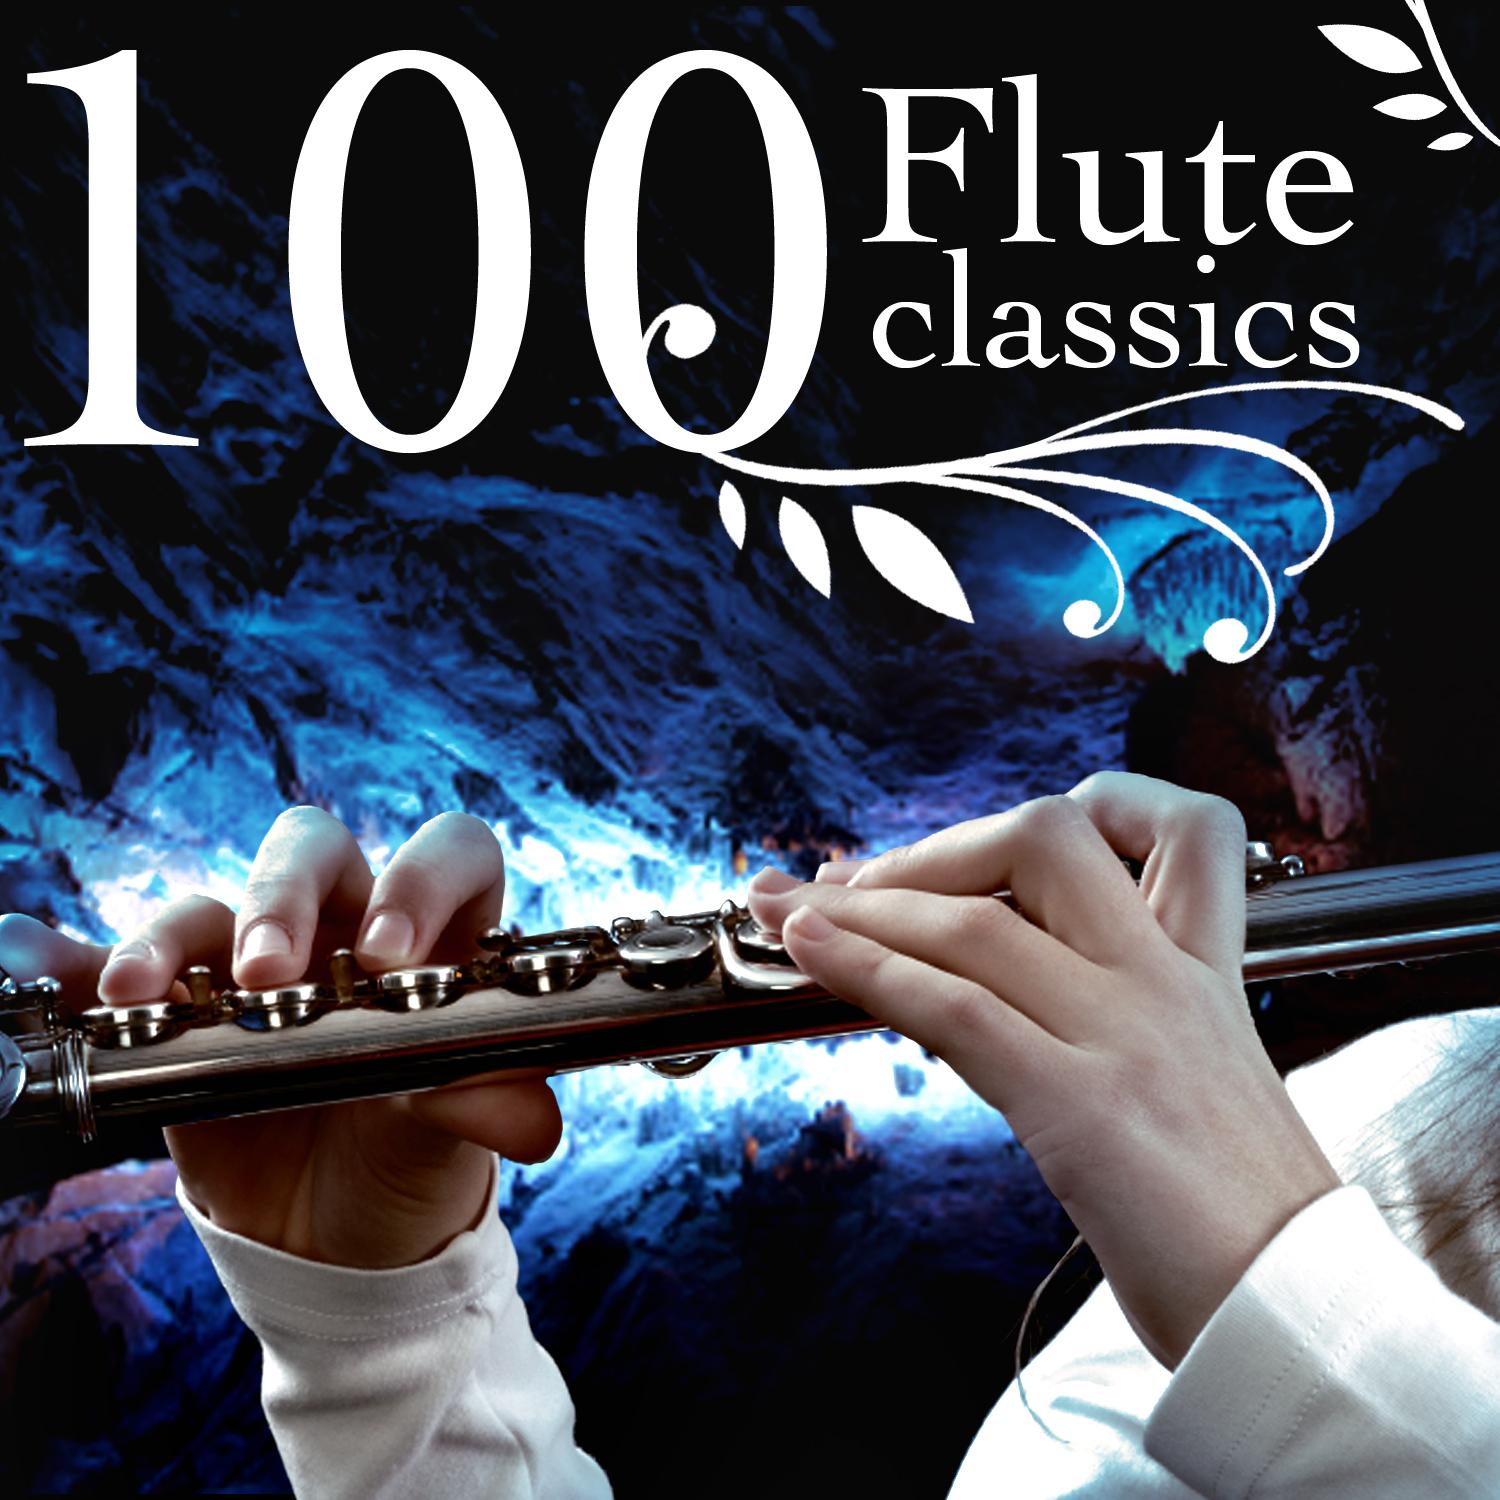 Flute Concerto In D, Op. 10 No. 3, RV 428, "Il Gardellino" - I. Allegro